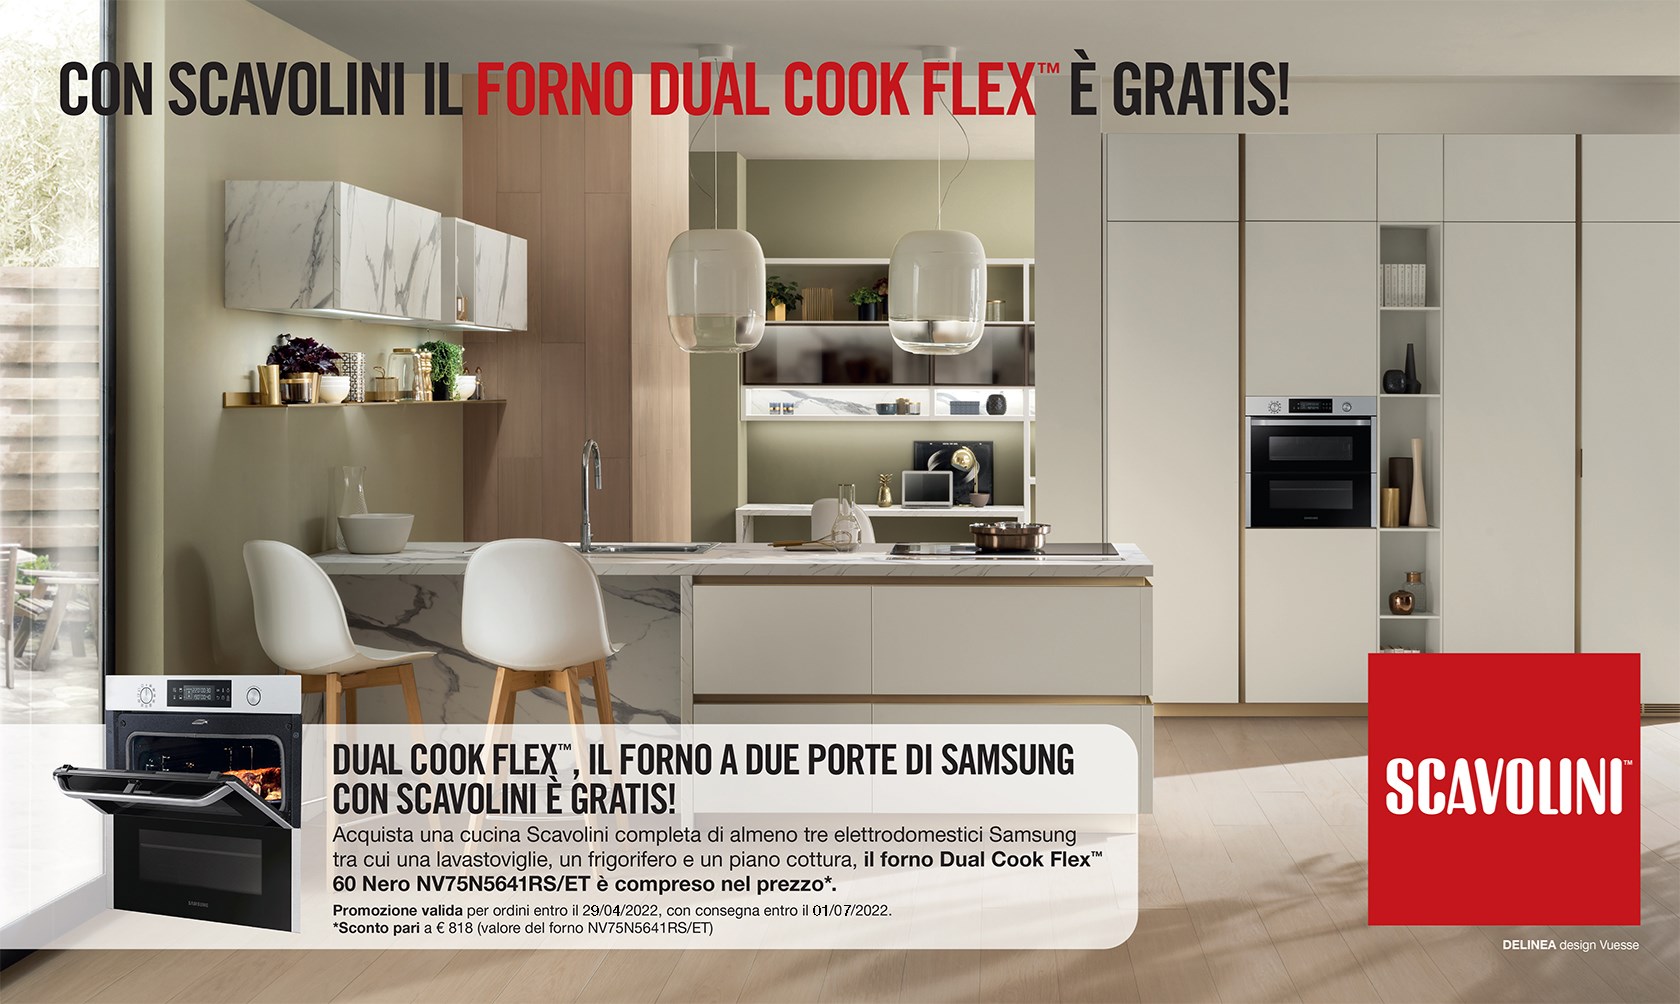 Promozione cucine Scavolini. In omaggio il forno Dual Cook Flex di Samsung con l'acquisto di una cucine Scavolini